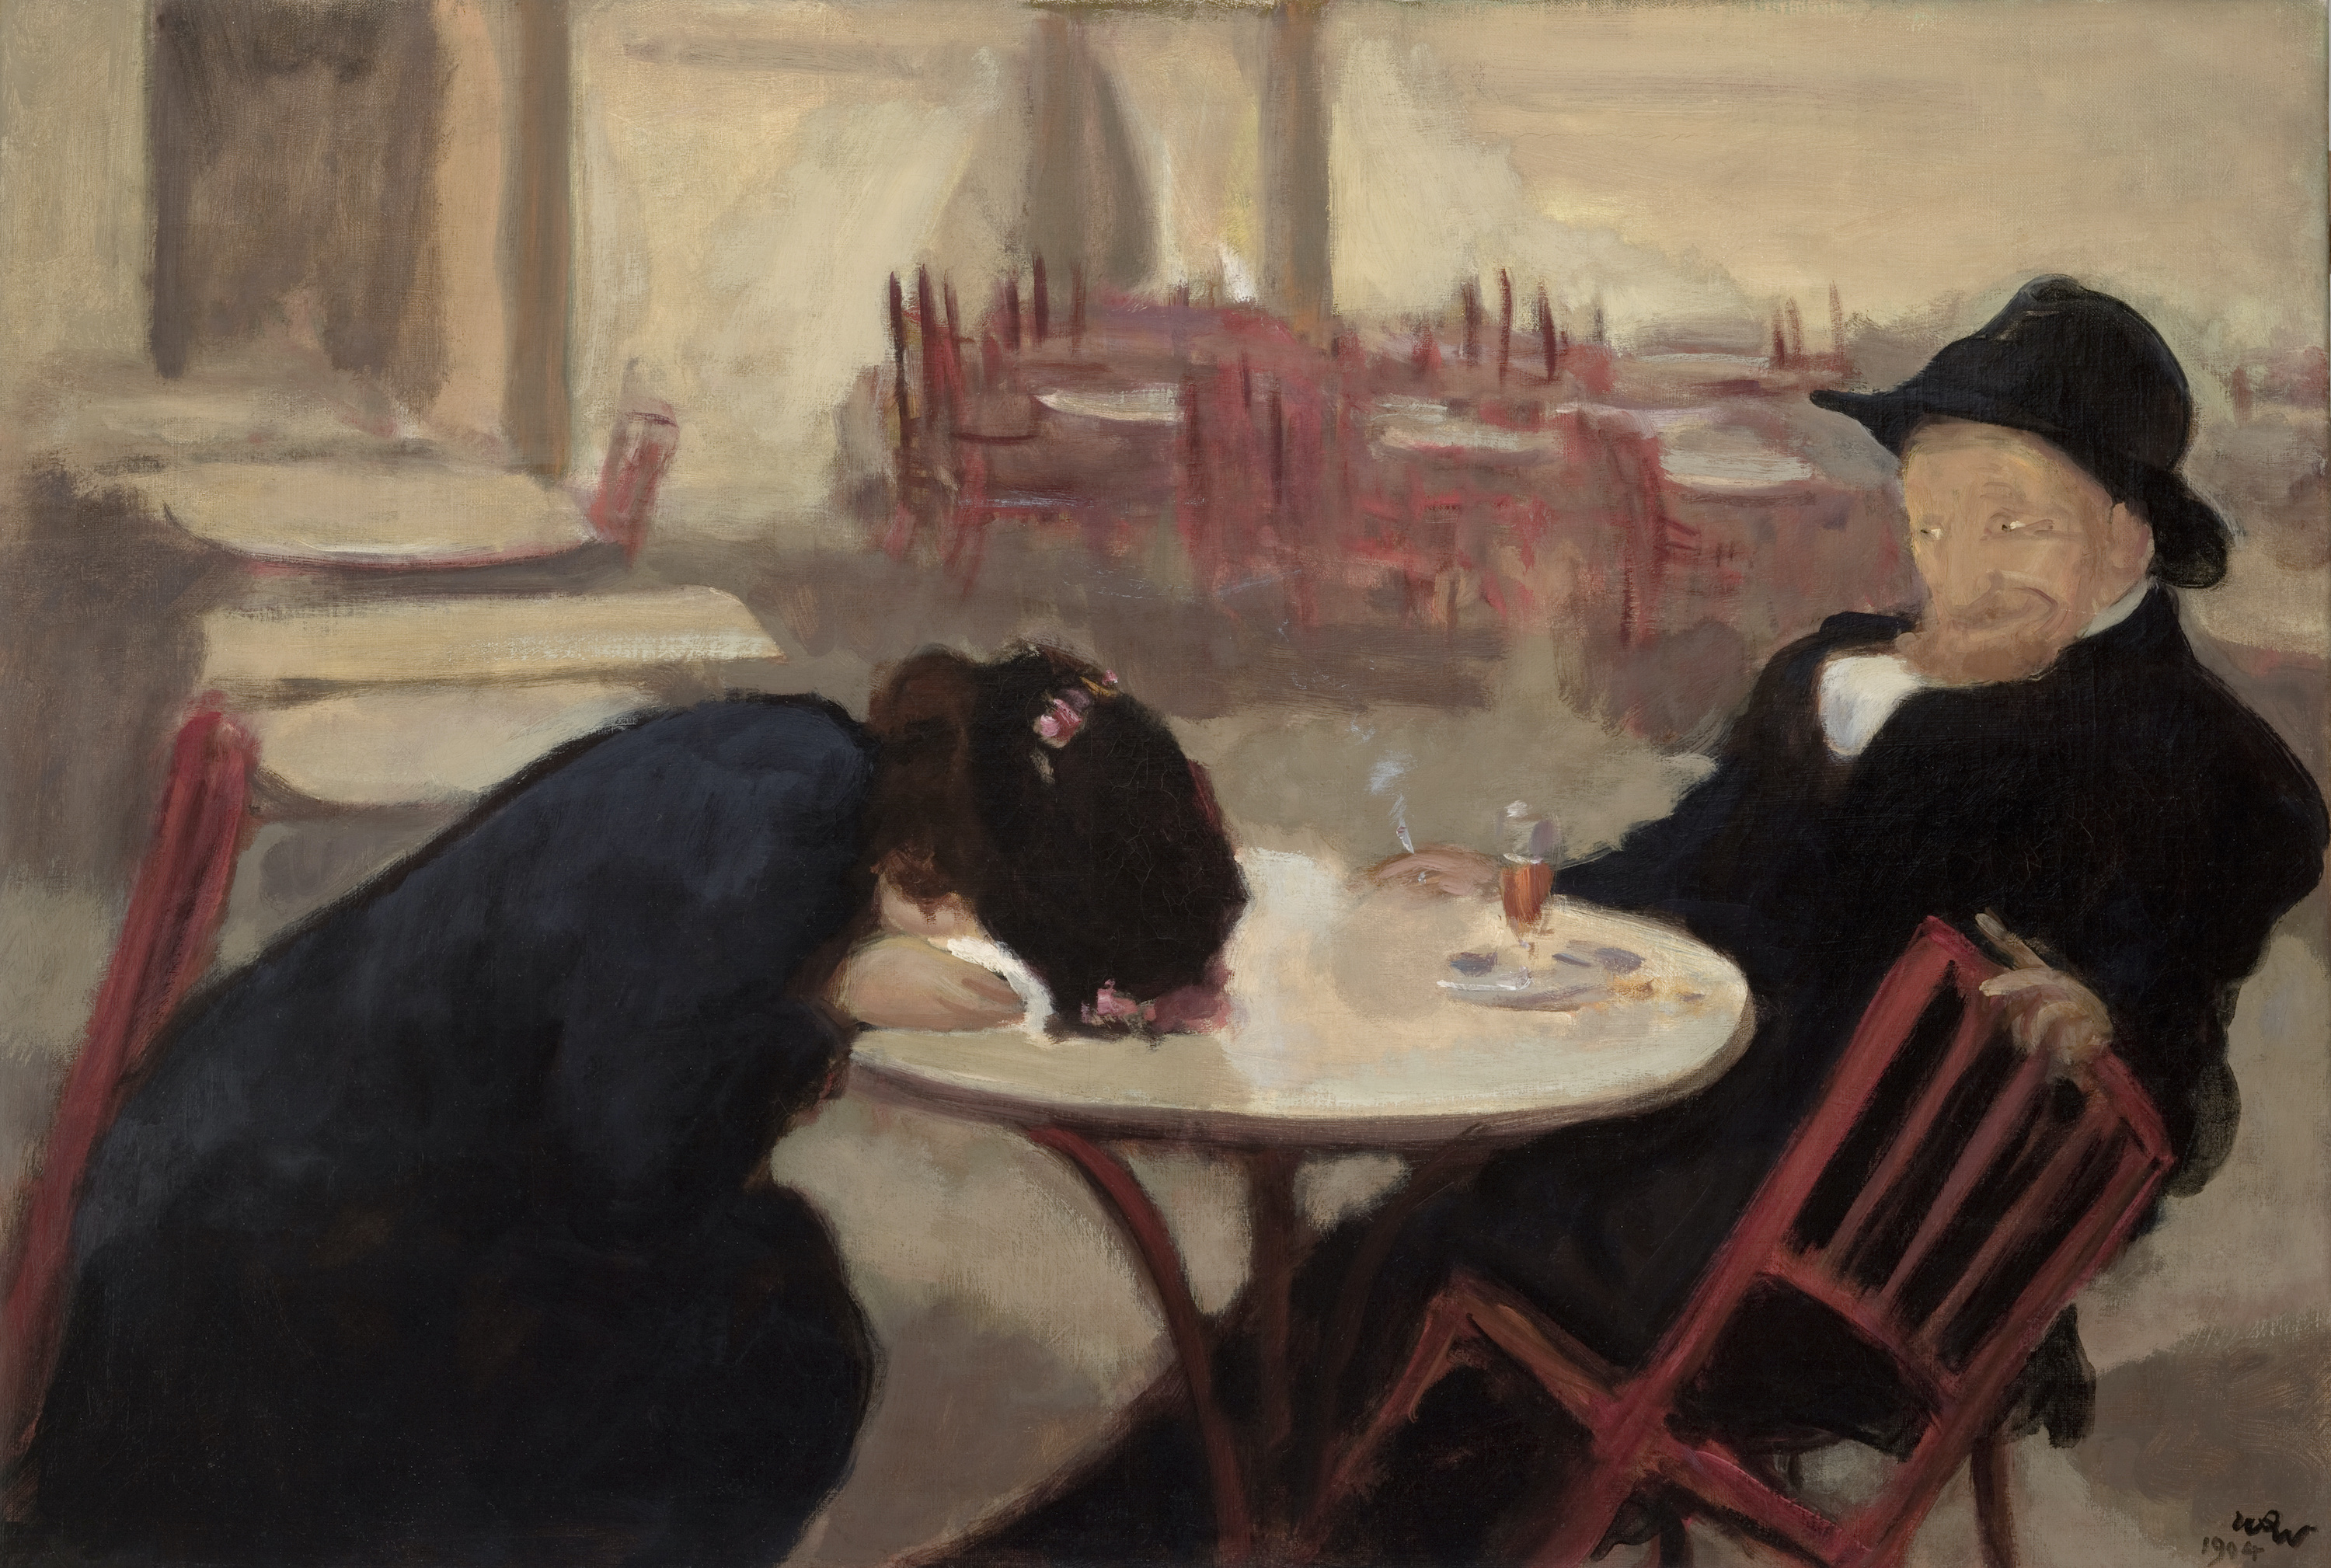 Demónio (No café) by Wojciech Weiss - 1904 - 65 x 95 cm 